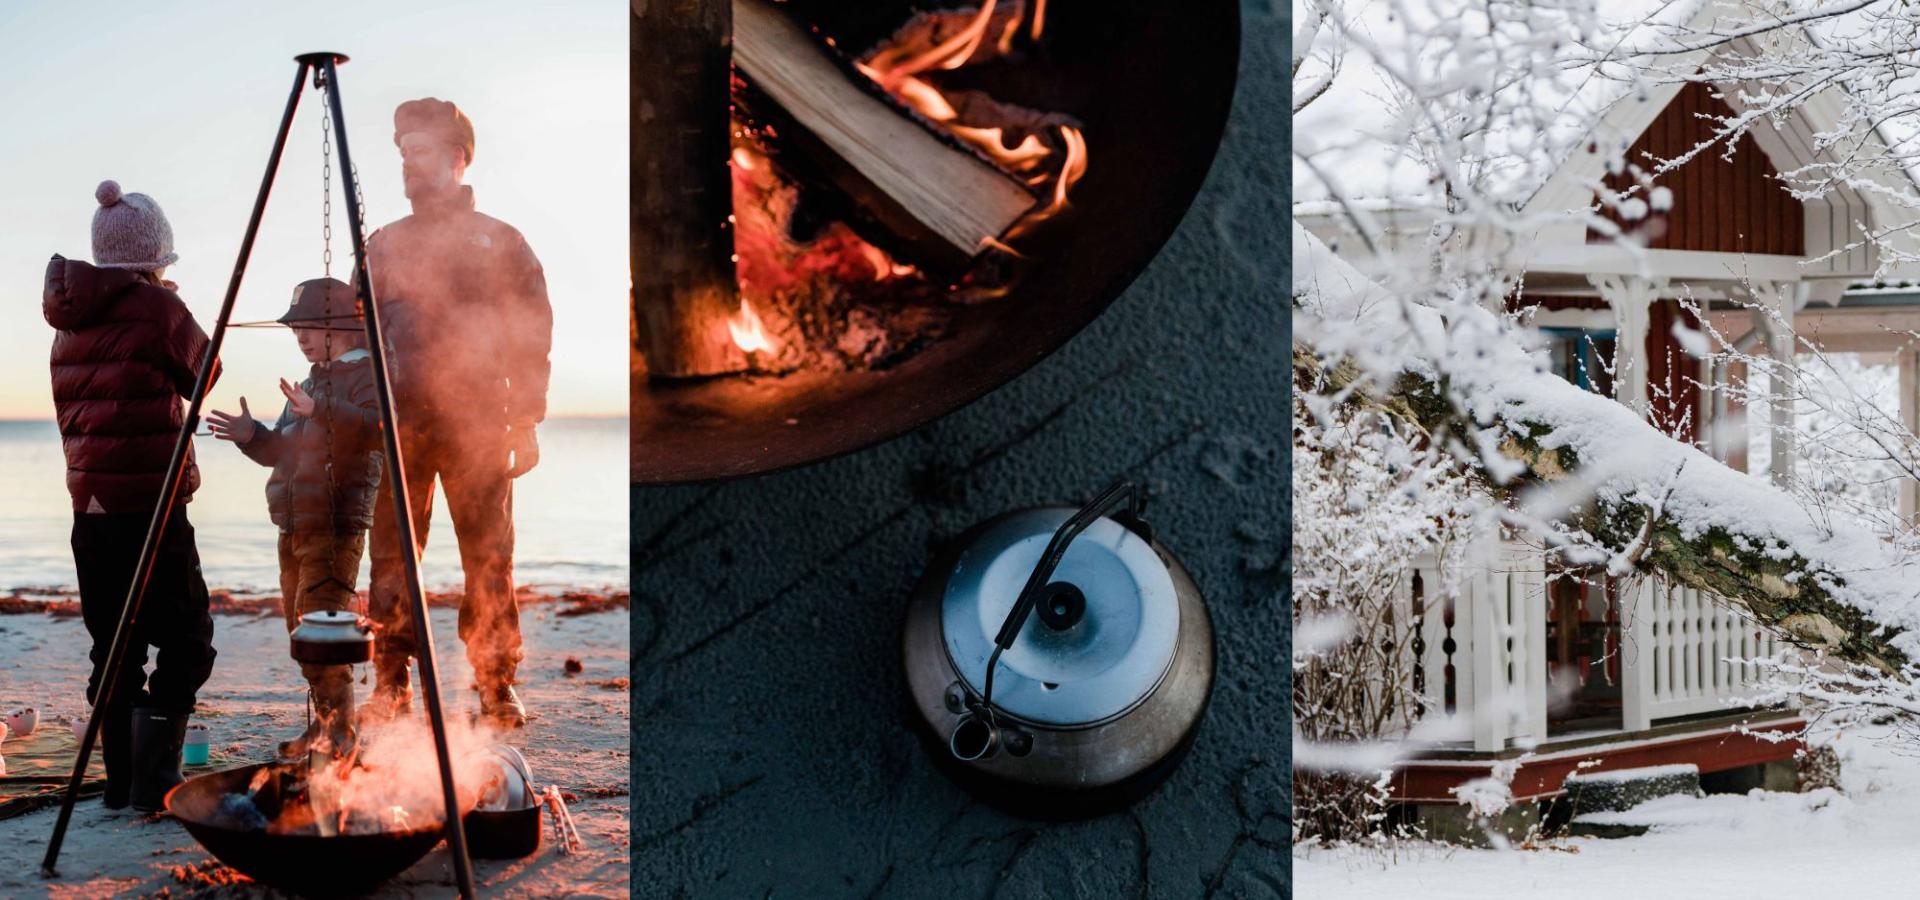 Vinter i Blekinges skärgård. Outdoor cooking och umgås.